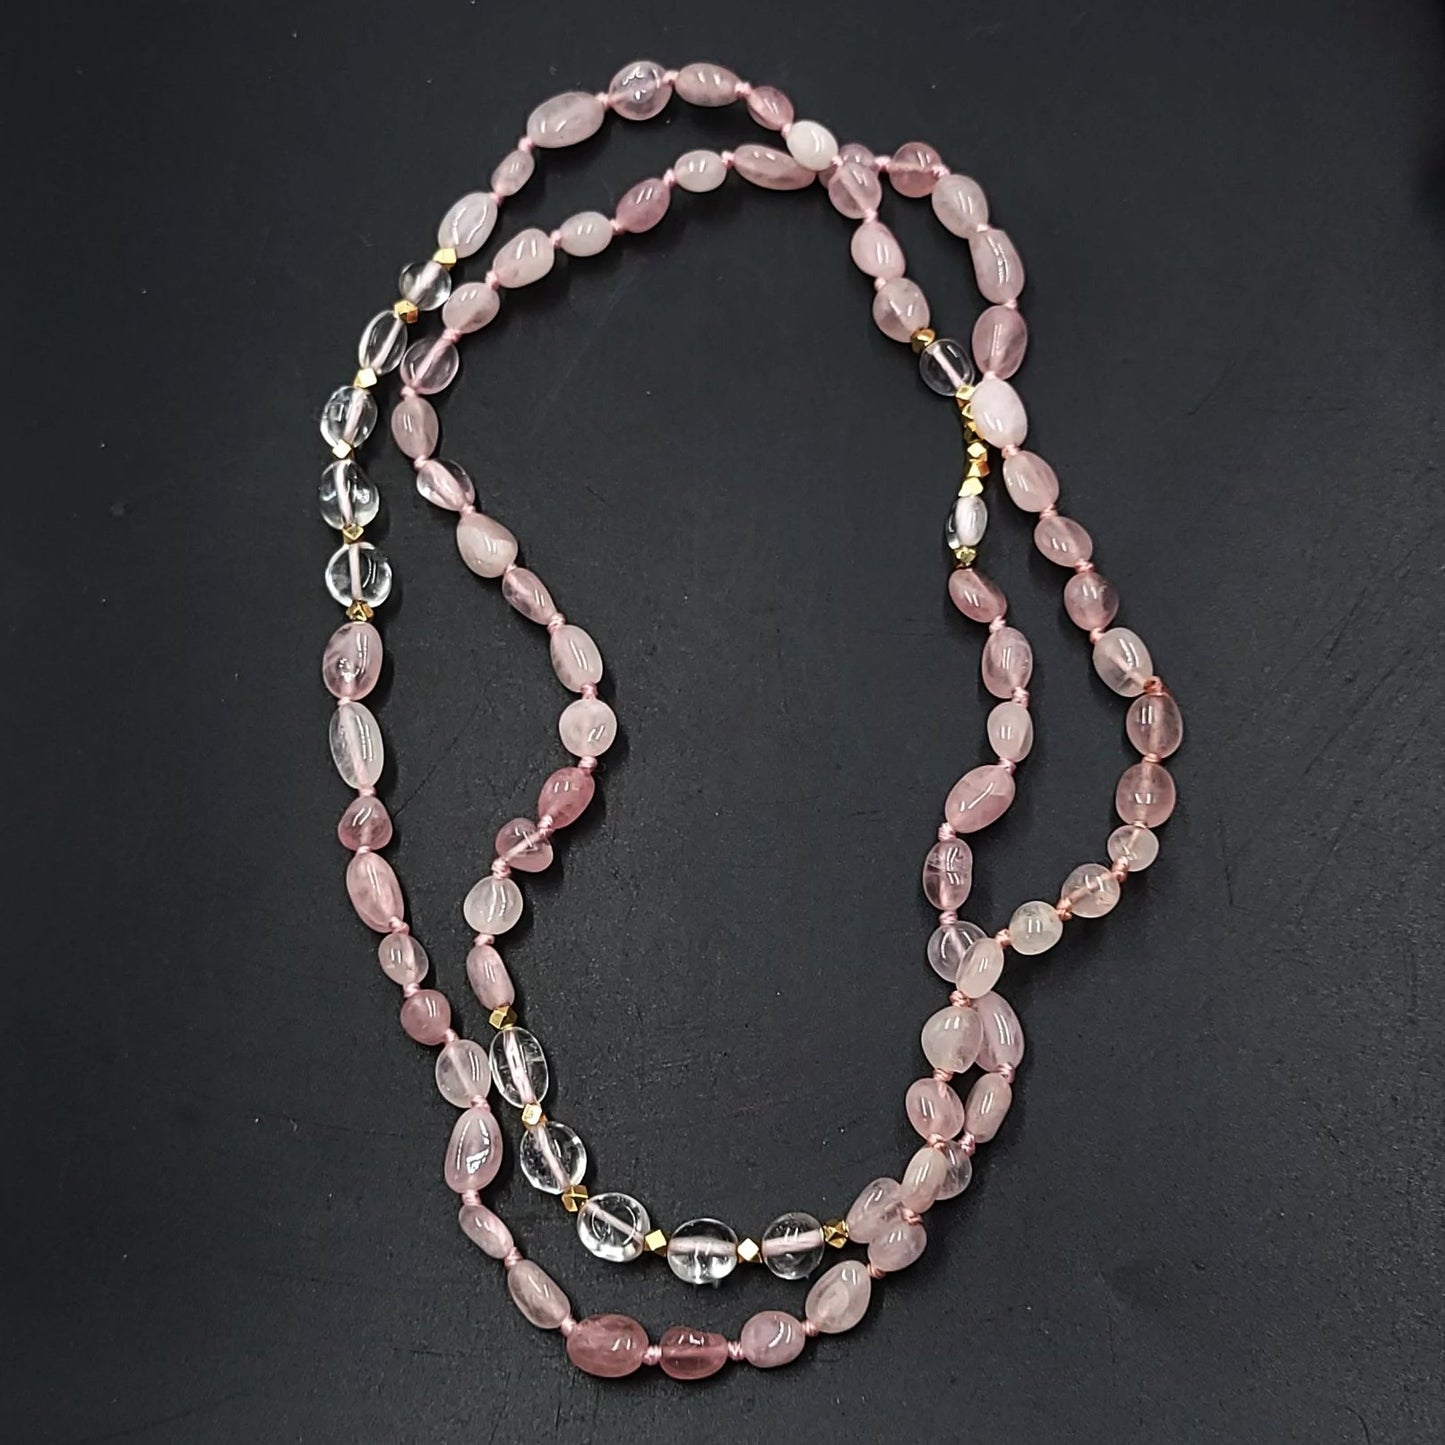 Rose Quartz & Clear Quartz Bead Necklace Tumbled Stones 30" - Elevated Metaphysical